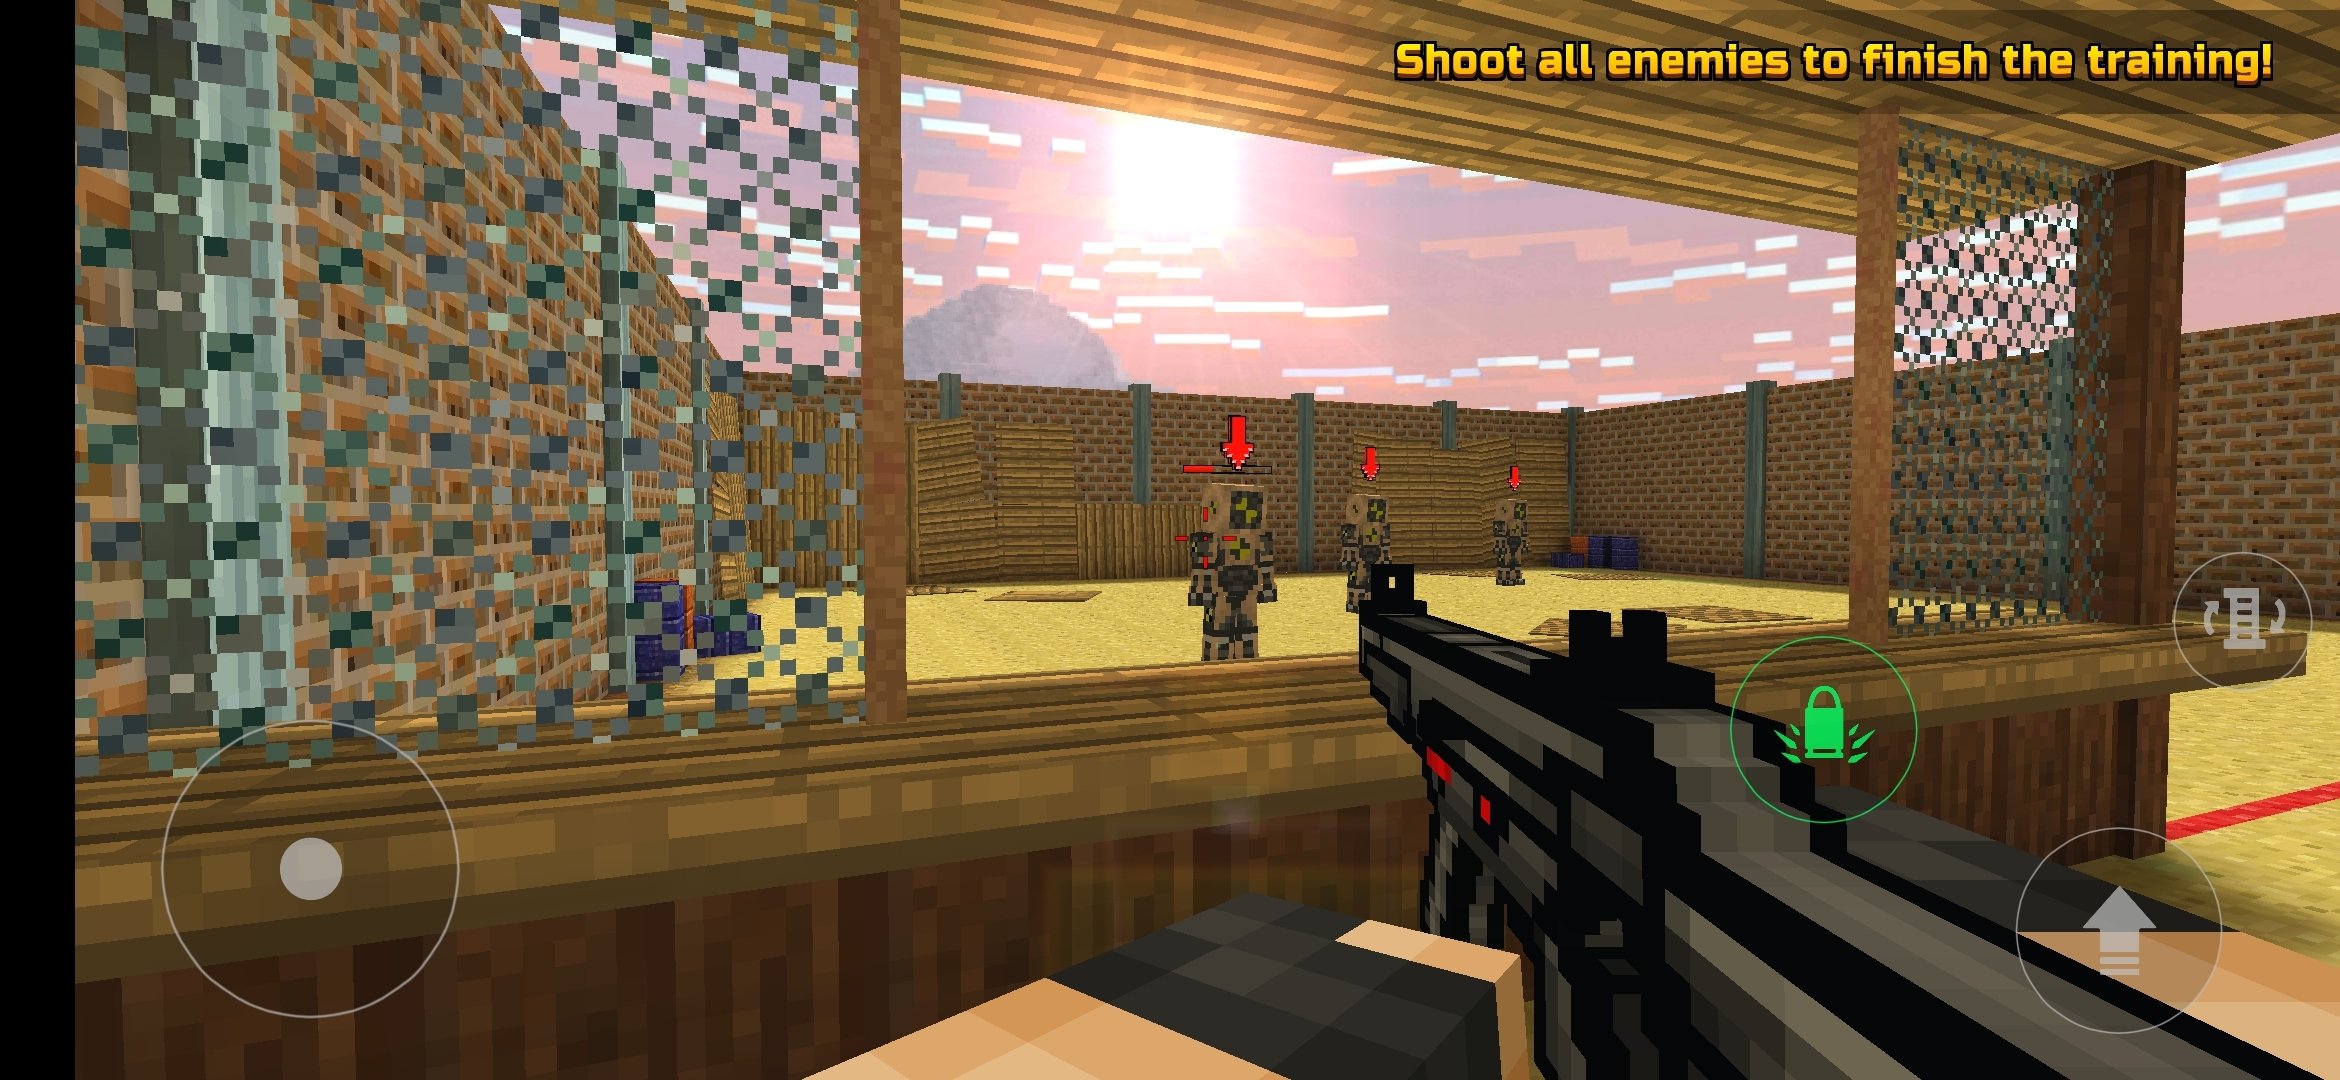 pixel gun 3d game free download